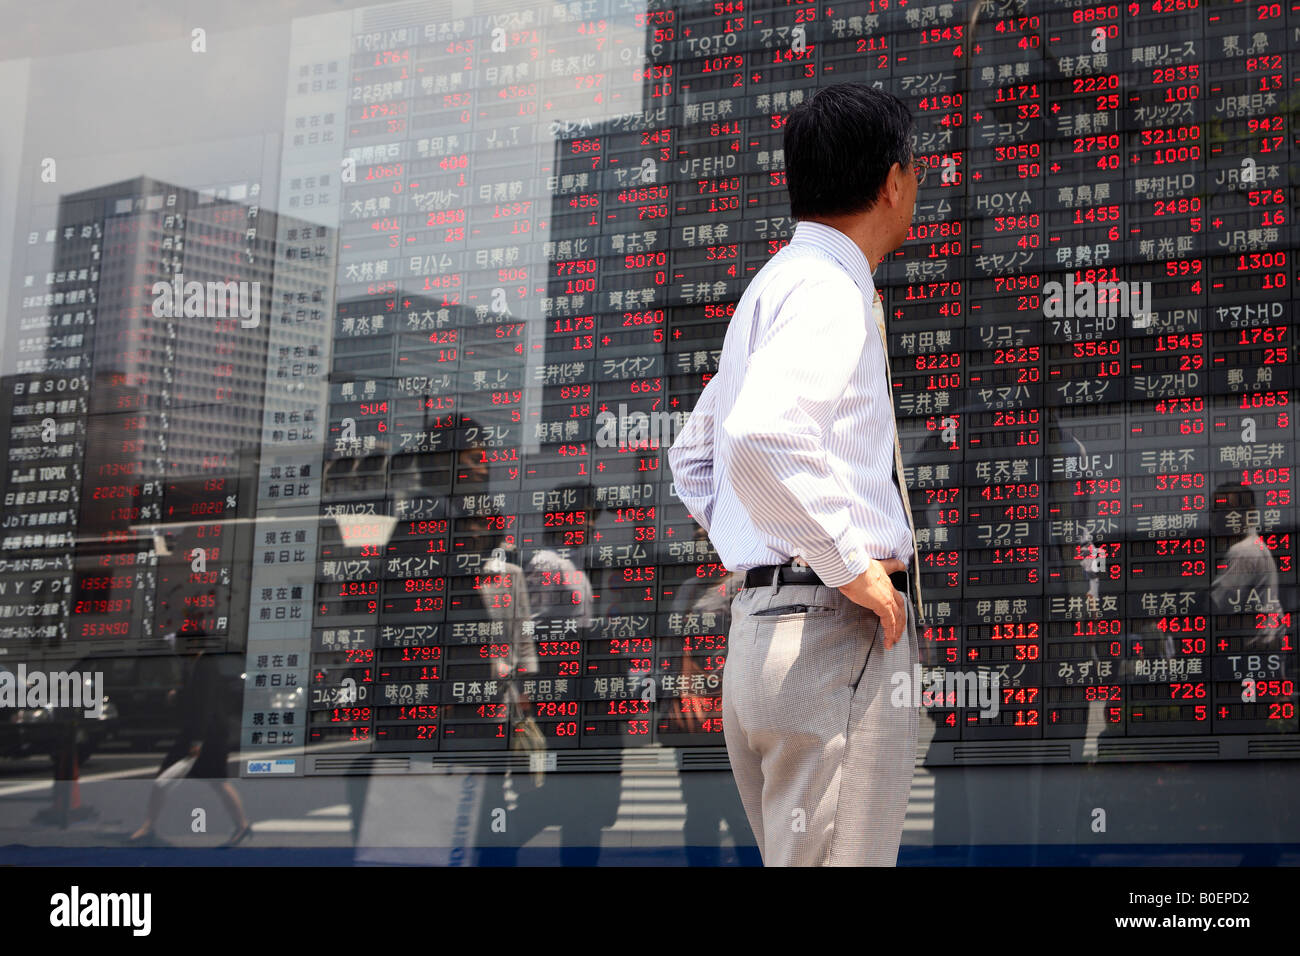 Japanischen Geschäftsmann sieht einen Bank Aktien Monitor Bildschirm zeigt die aktuellen Werte der Rohstoffe Tokio Japan Stockfoto